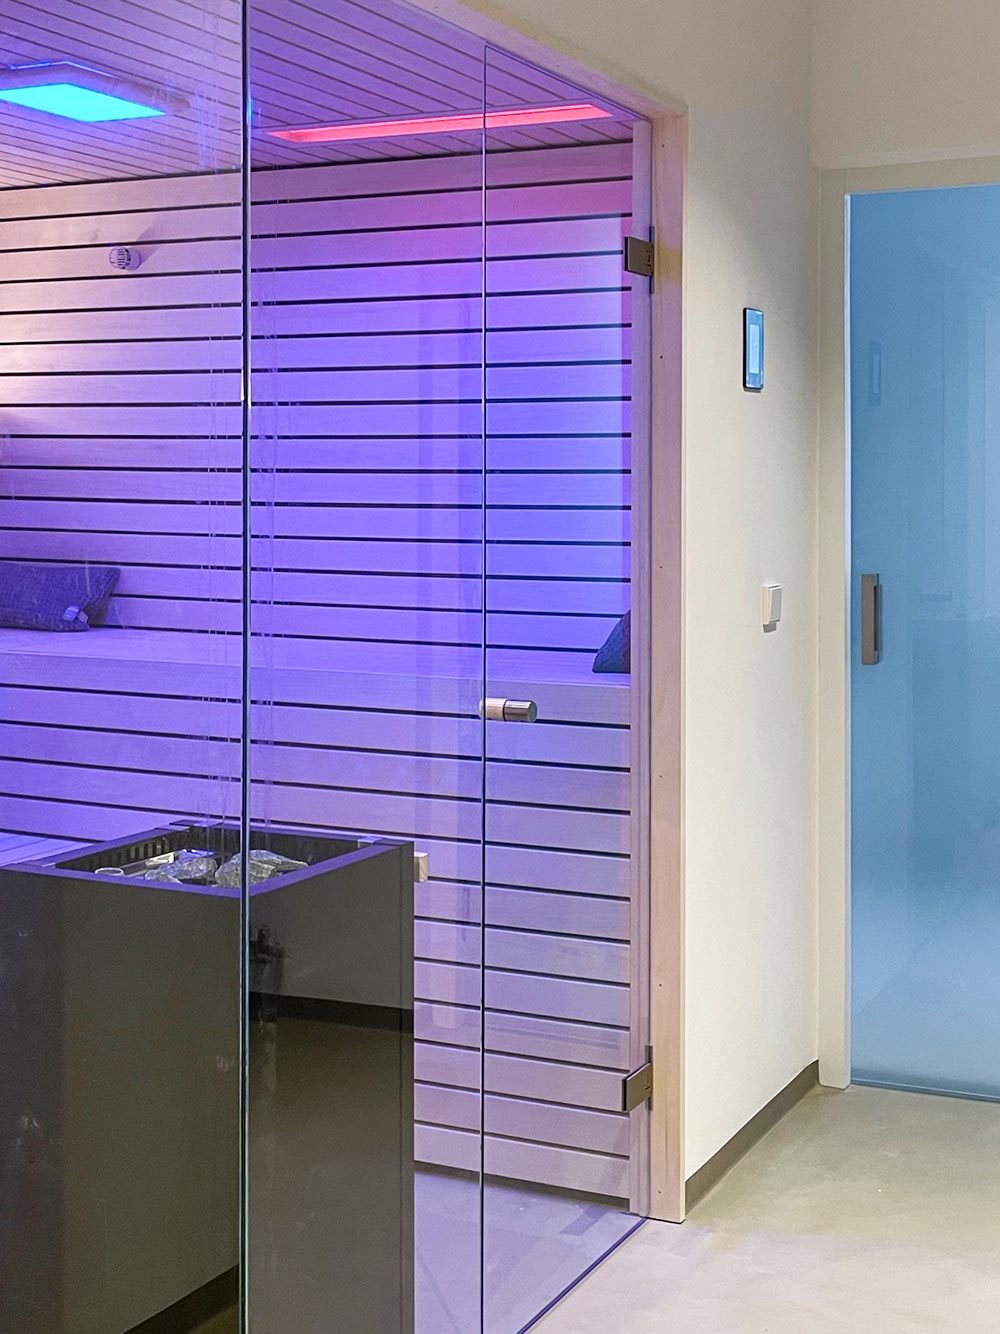 Neue Design-Sauna mit Farblicht in Violett